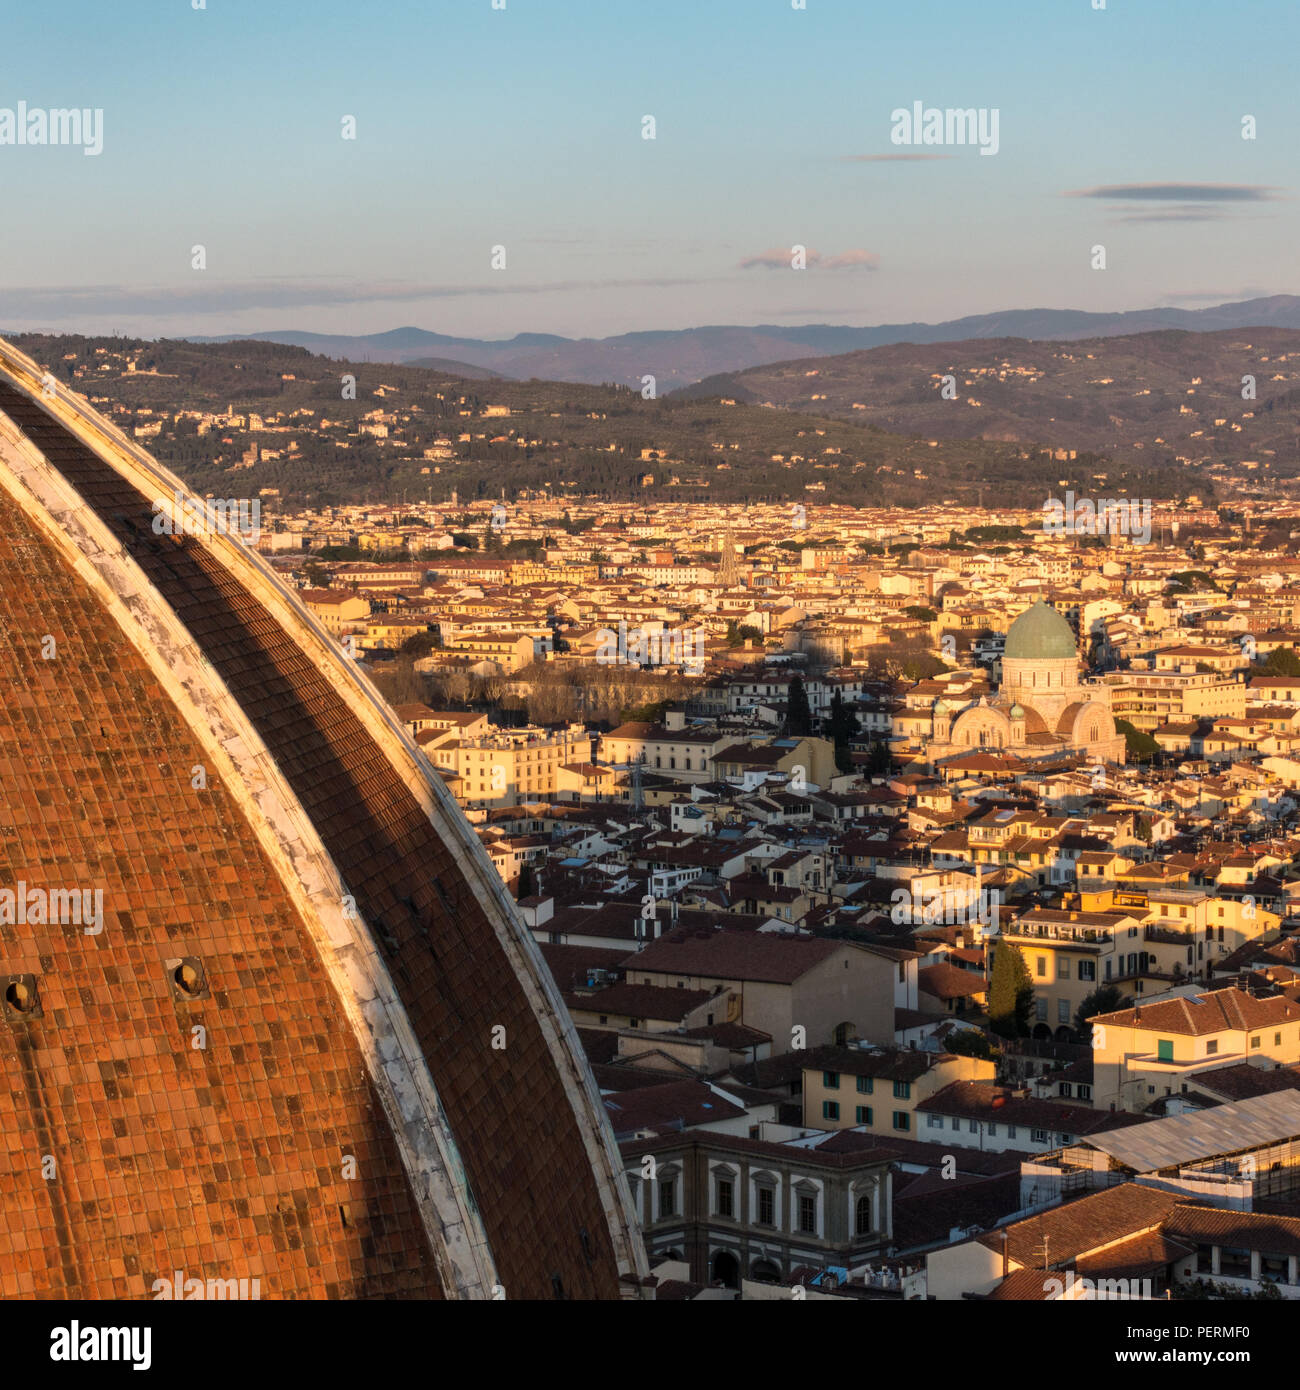 Florenz, Italien - 23. März 2018: Der Duomo di Firenze Dom wirft einen langen Schatten über das Stadtbild von Florenz bei Sonnenuntergang, mit dem Florenz Synag Stockfoto